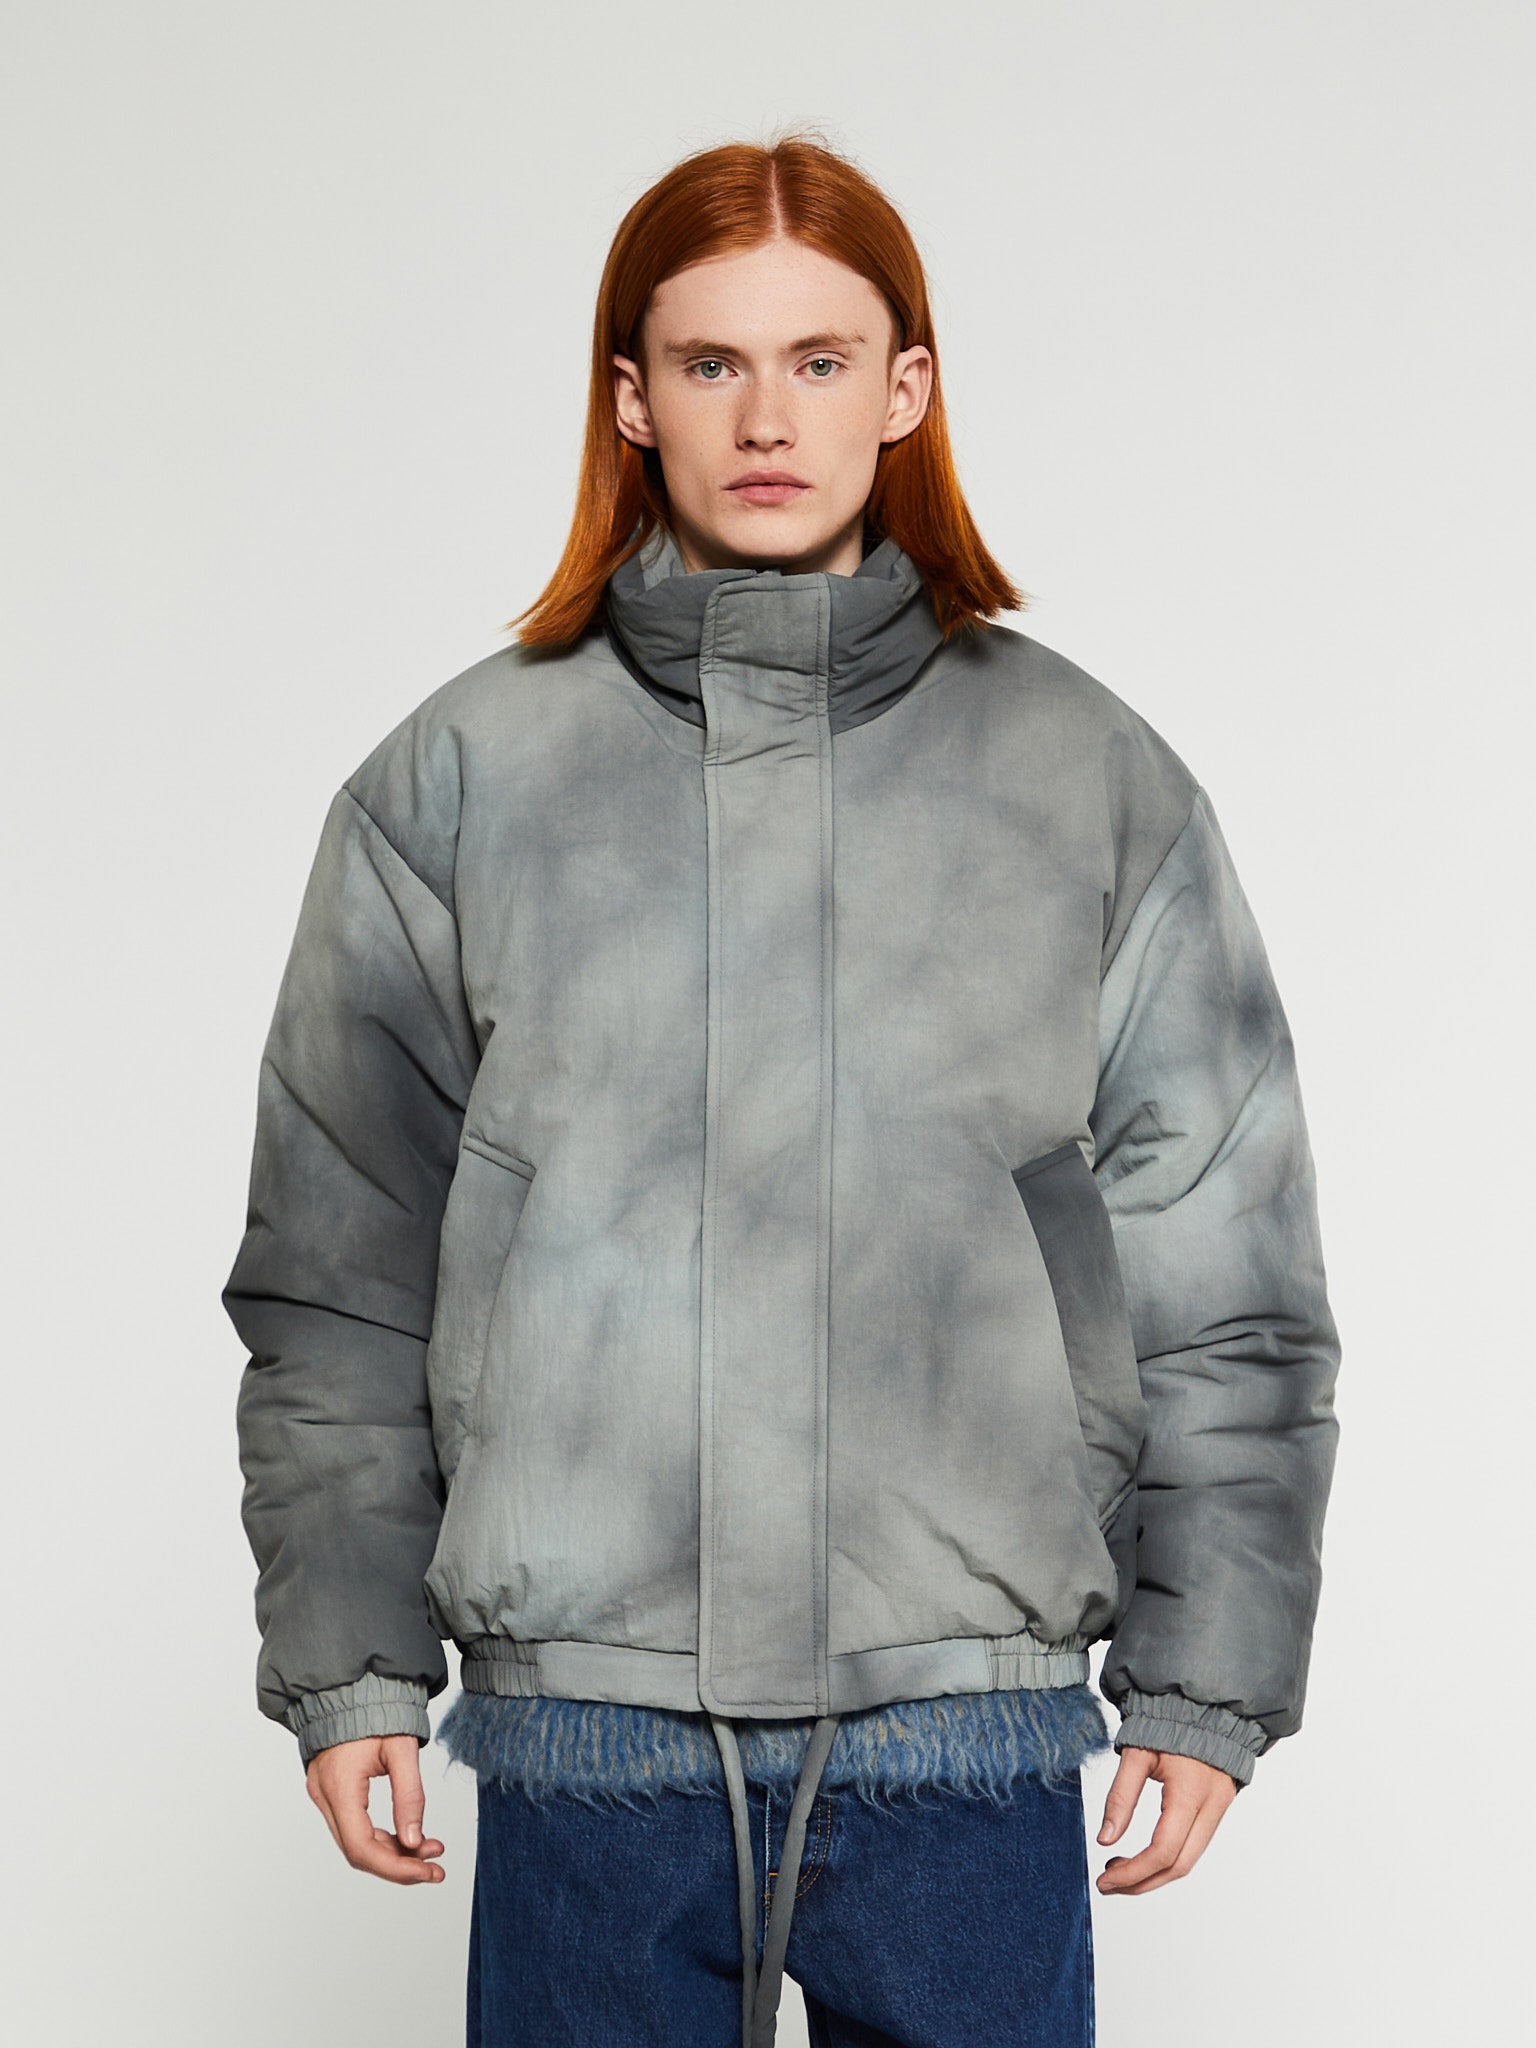 Acne Studios - Tie Dye Puffer Jacket in Grey